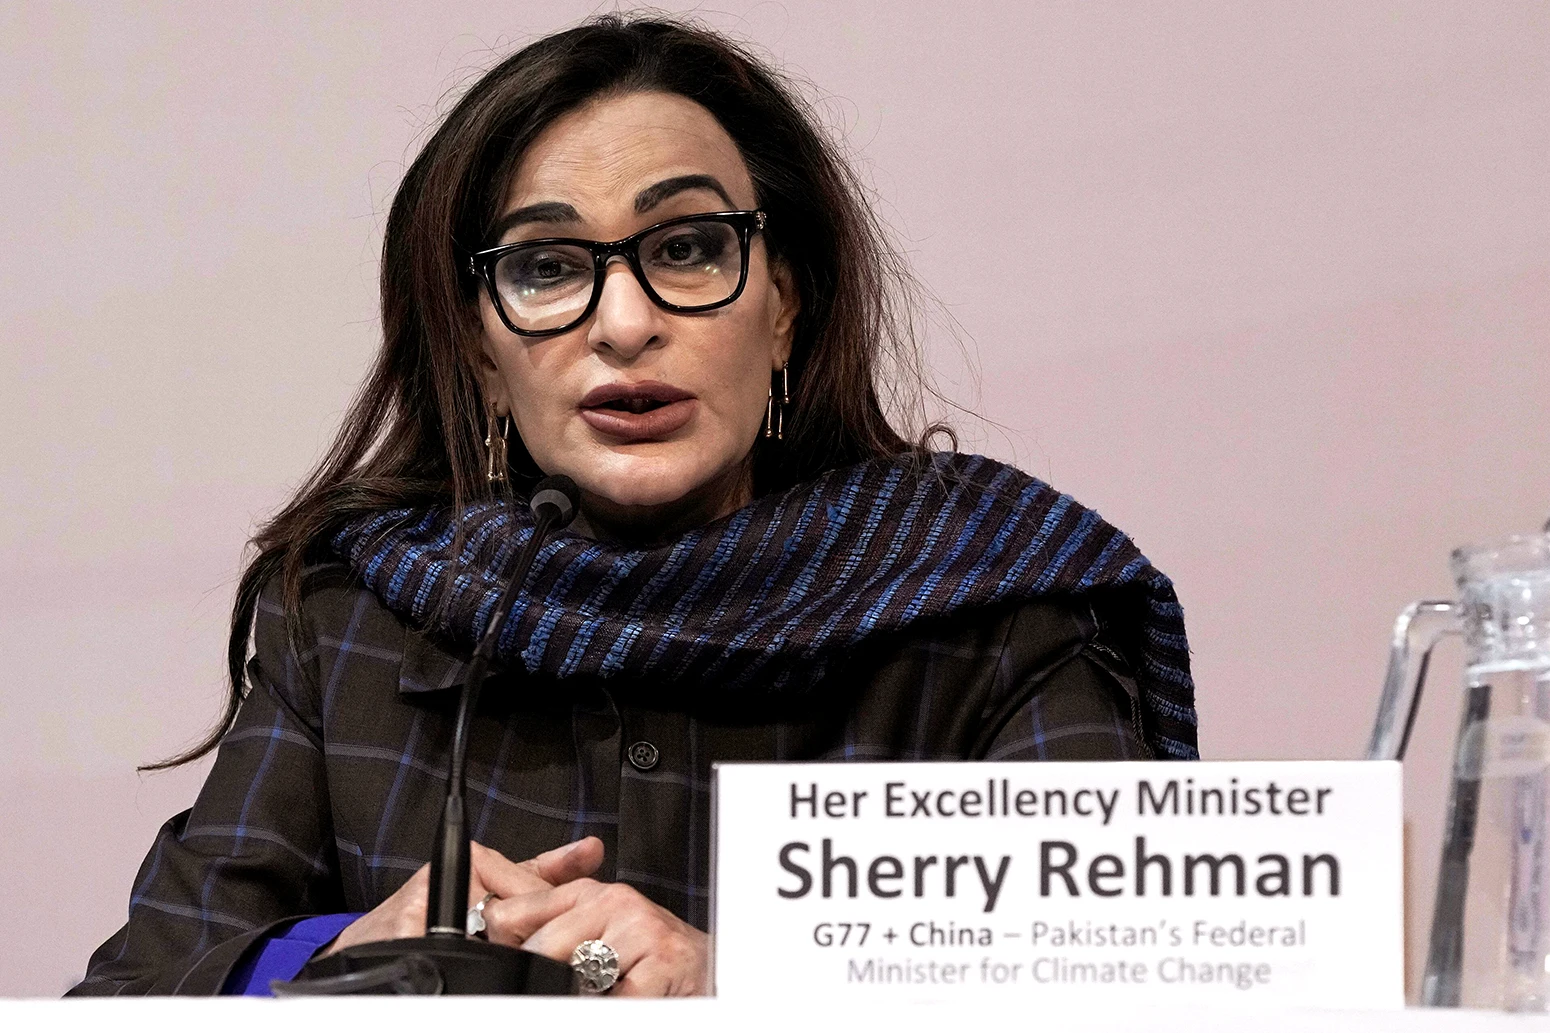 27 年 17 月 2022 日，巴基斯坦气候变化部长雪莉·拉赫曼 (Sherry Rehman) 在 COPXNUMX 上发言。